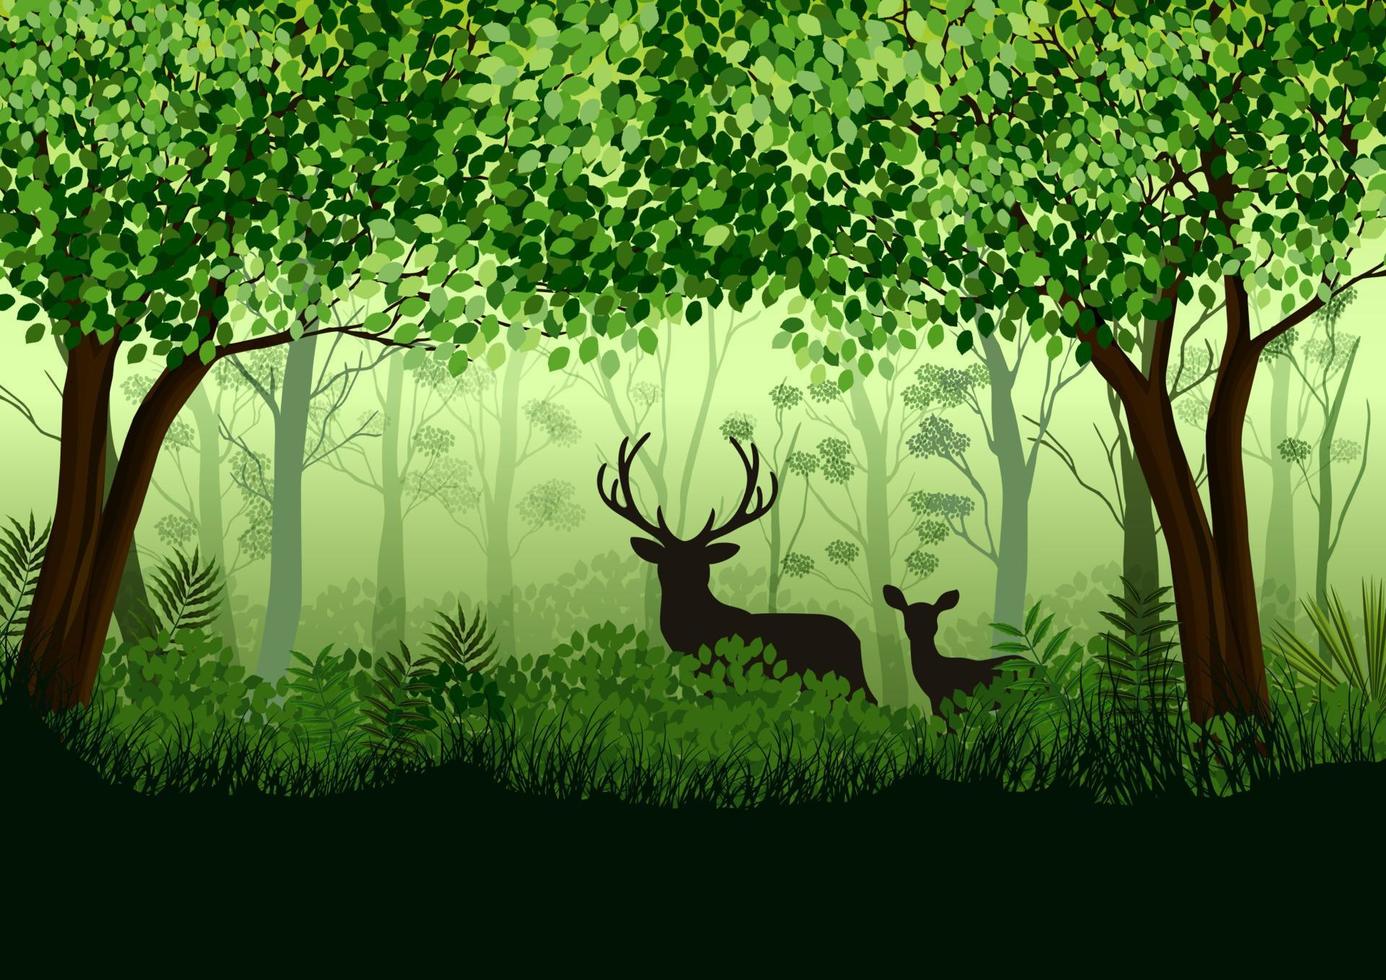 forêt verte avec des wapitis sauvages dans la forêt .illustration vectorielle vecteur